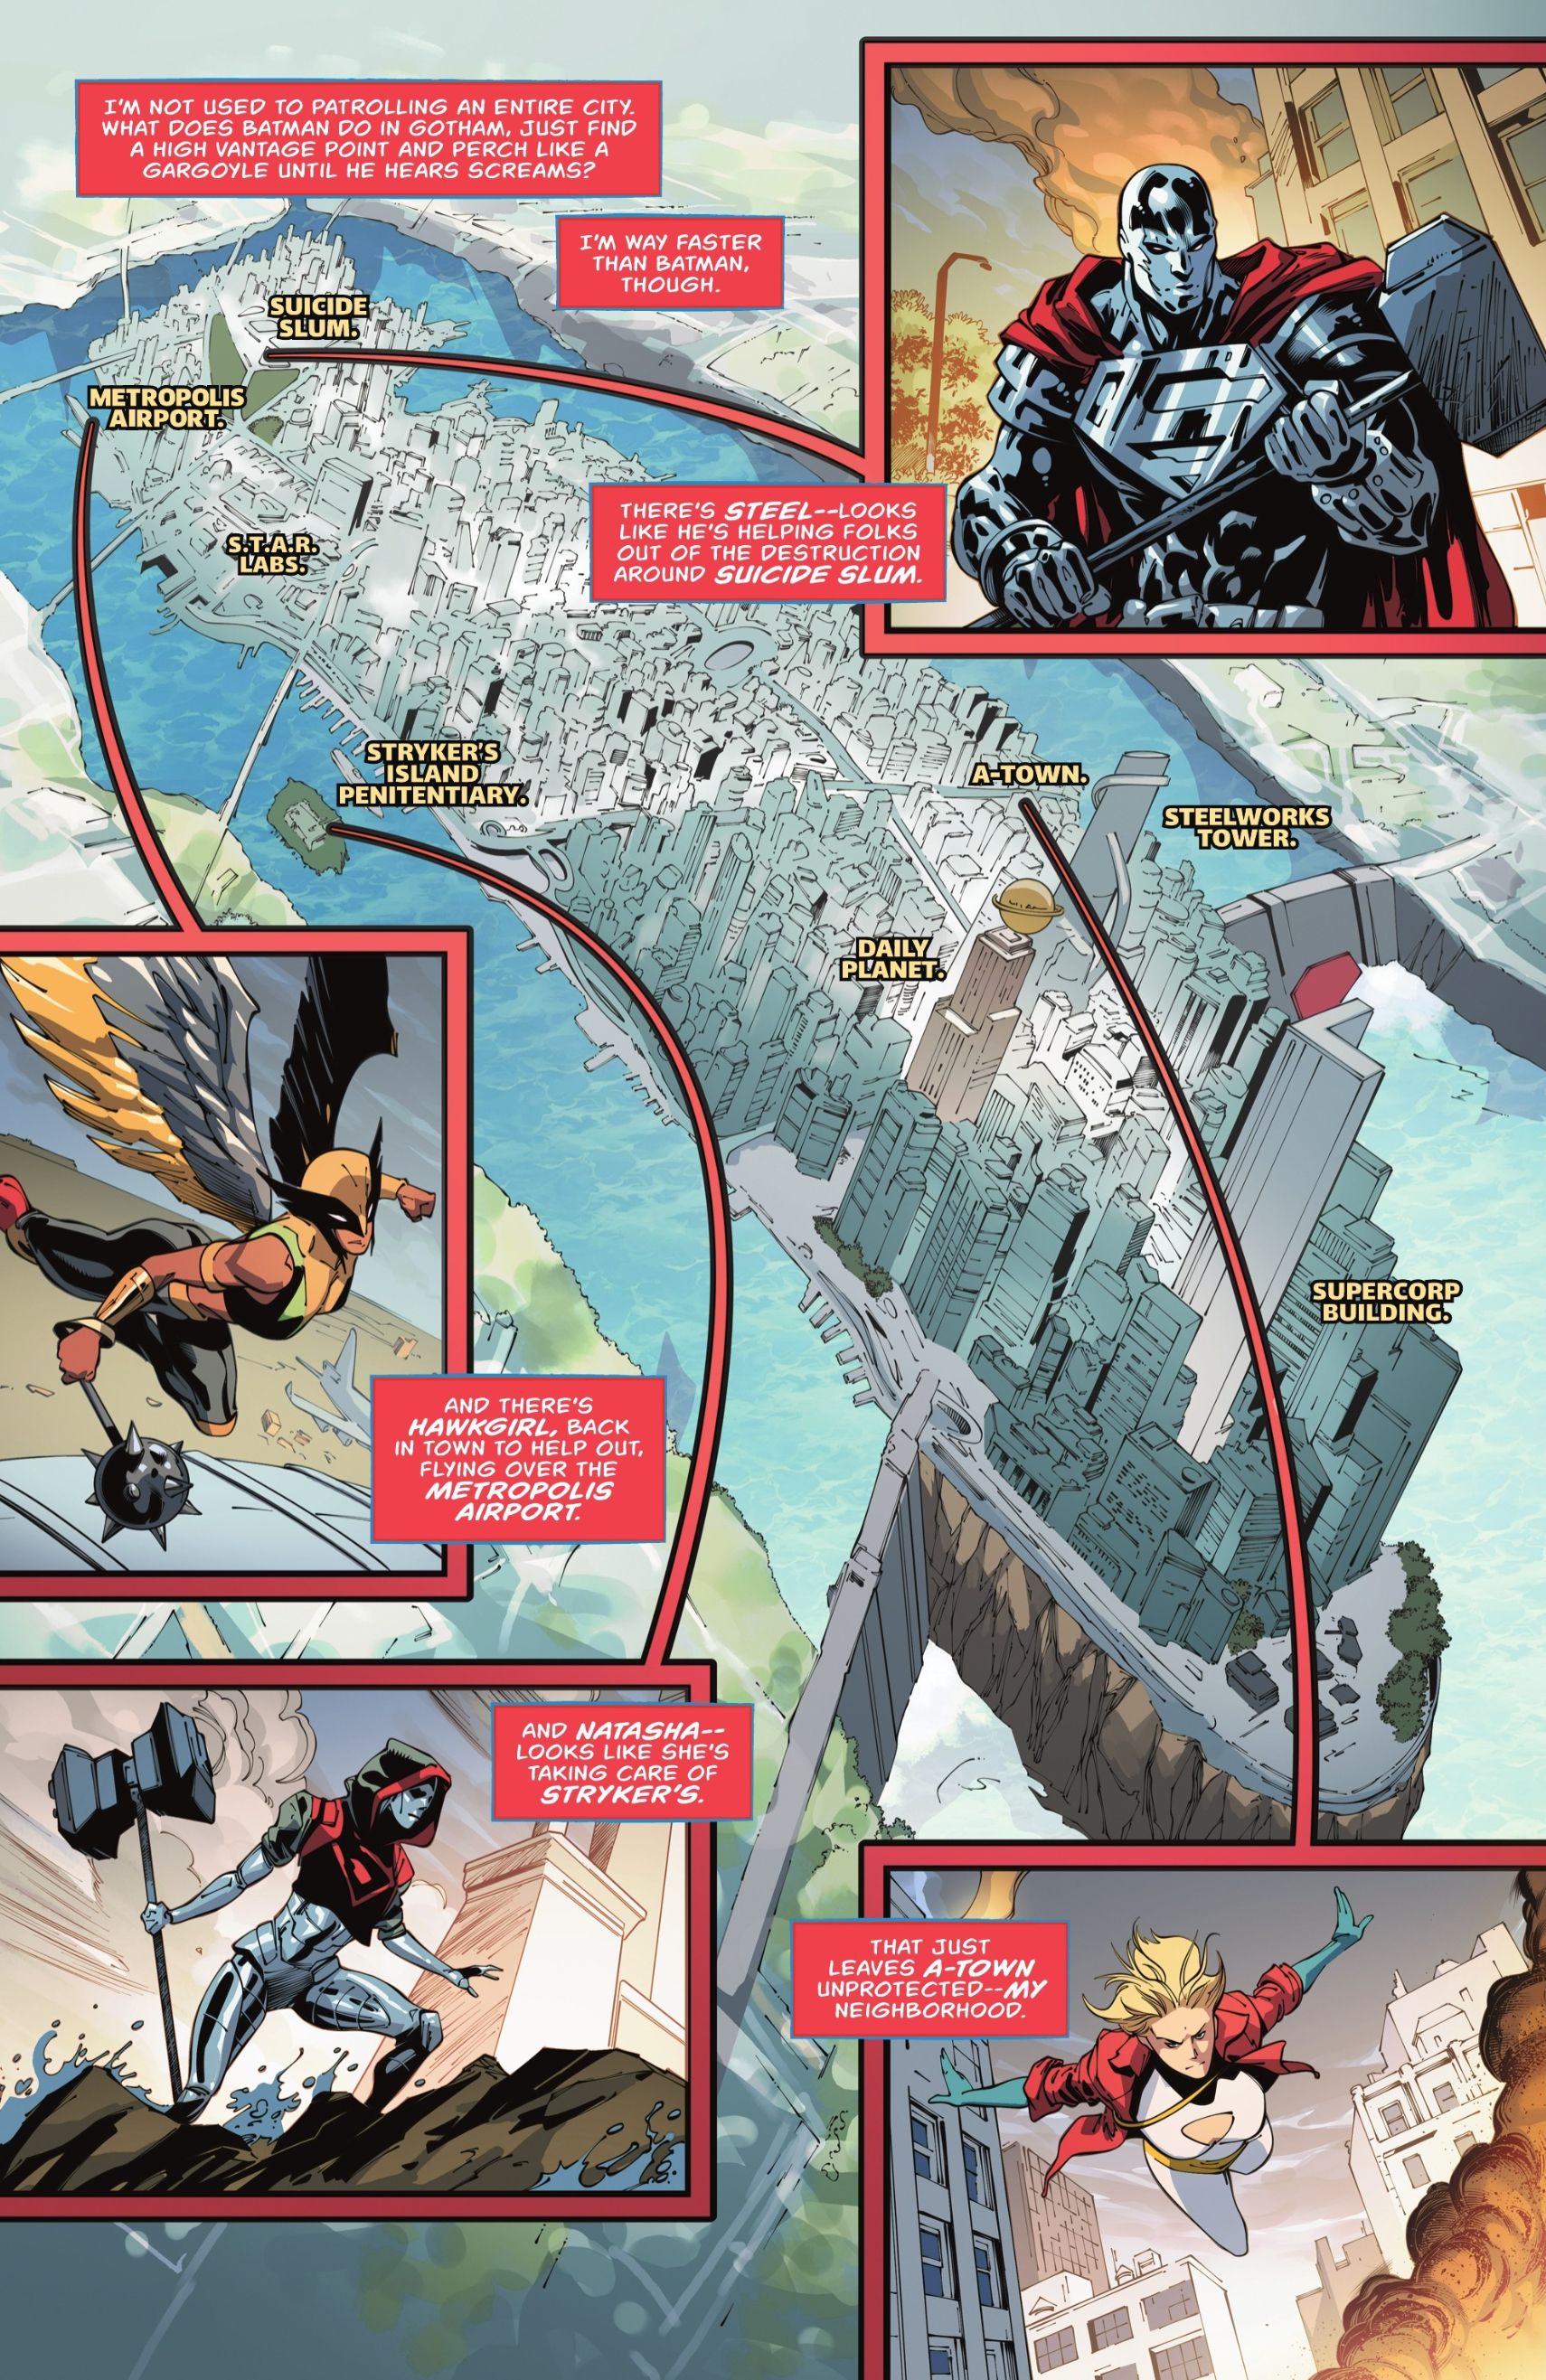 Página de quadrinhos: um mapa ampliado da cidade de Metropolis com fotos de Steel, Hawkgirl, Natasha Irons e Power Girl.